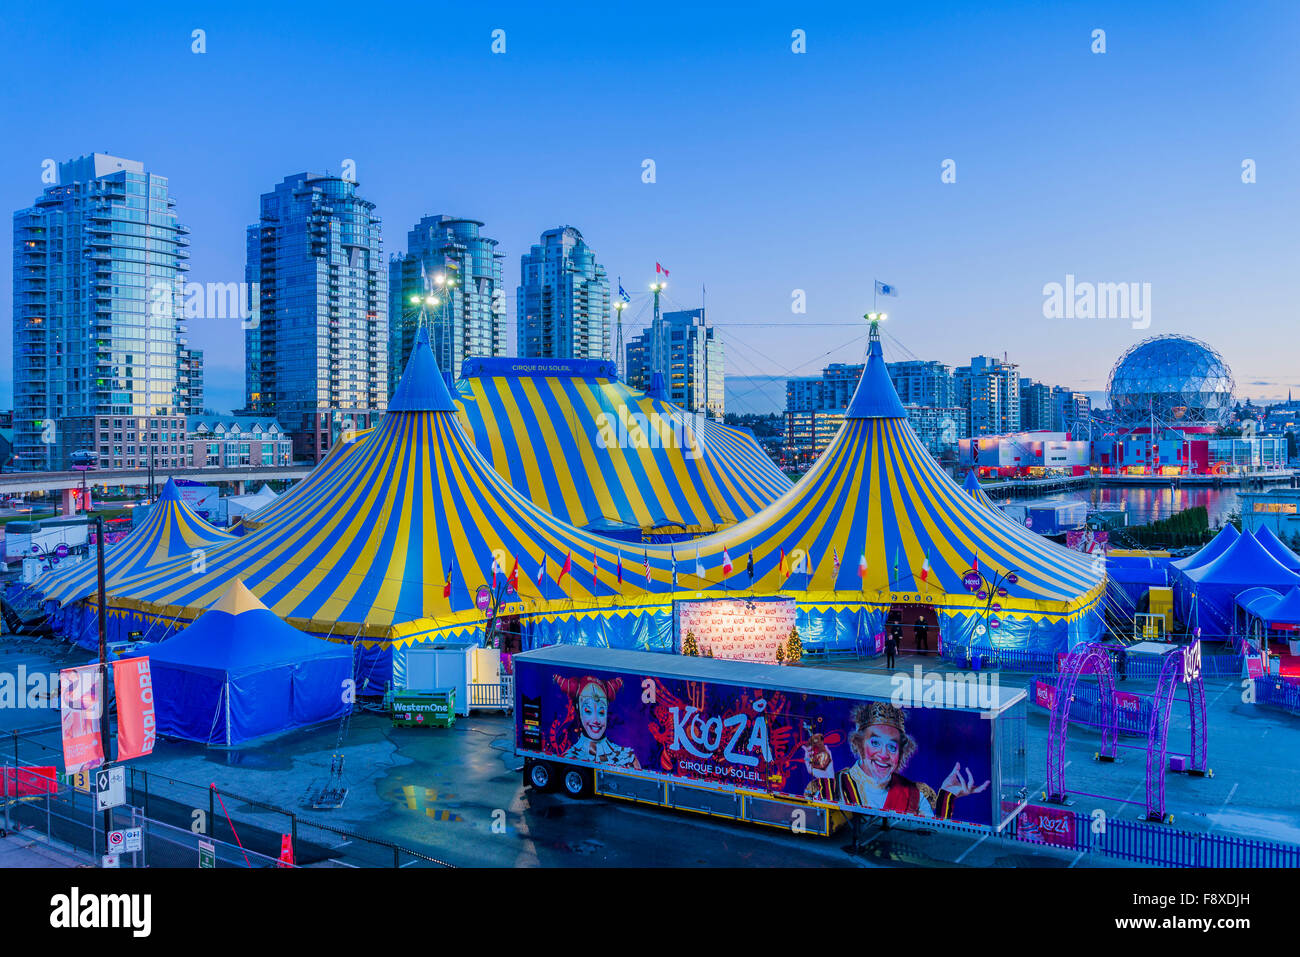 Cirque du Soleil, Kooza big top tents, Vancouver, British Columbia, Canada, Stock Photo